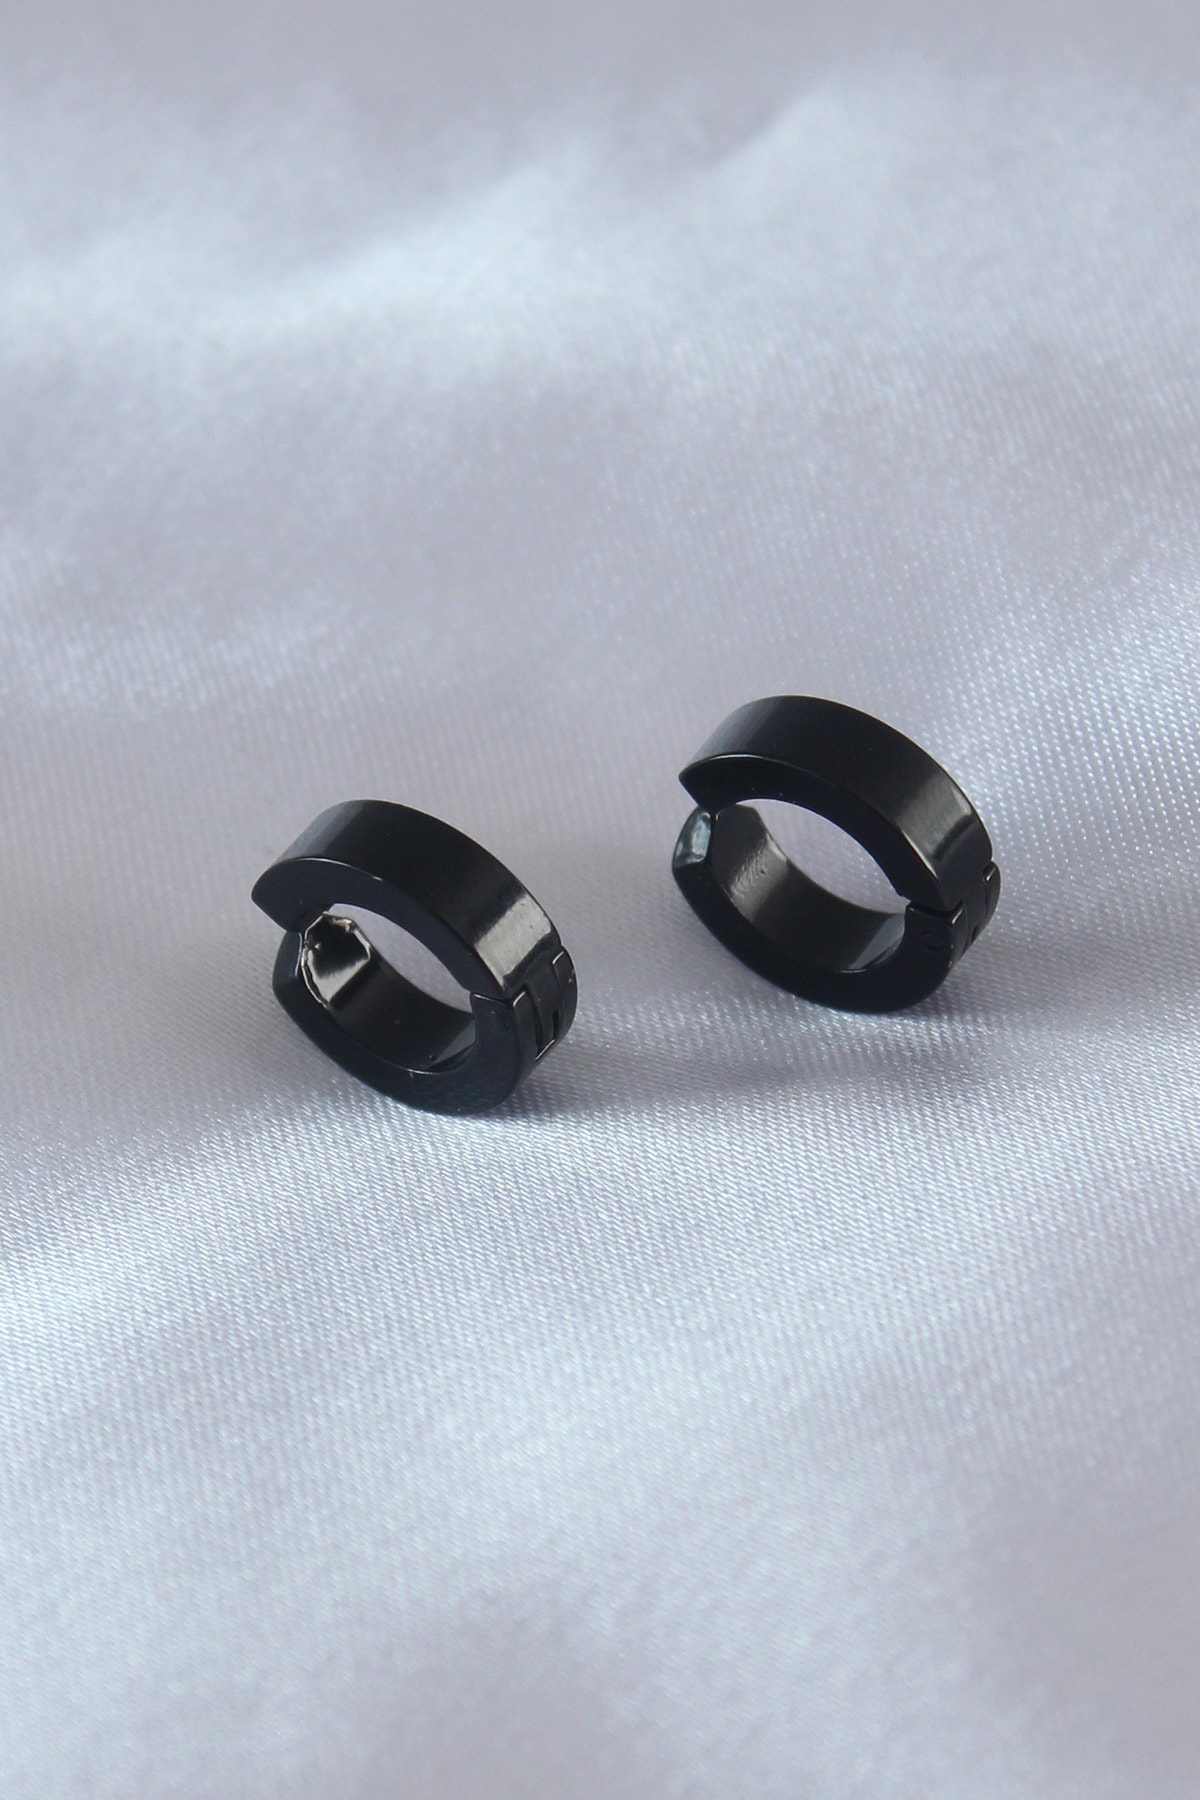 Buy Stainless Steel Black Studs Earings/Earrings for Men/Boys at Amazon.in